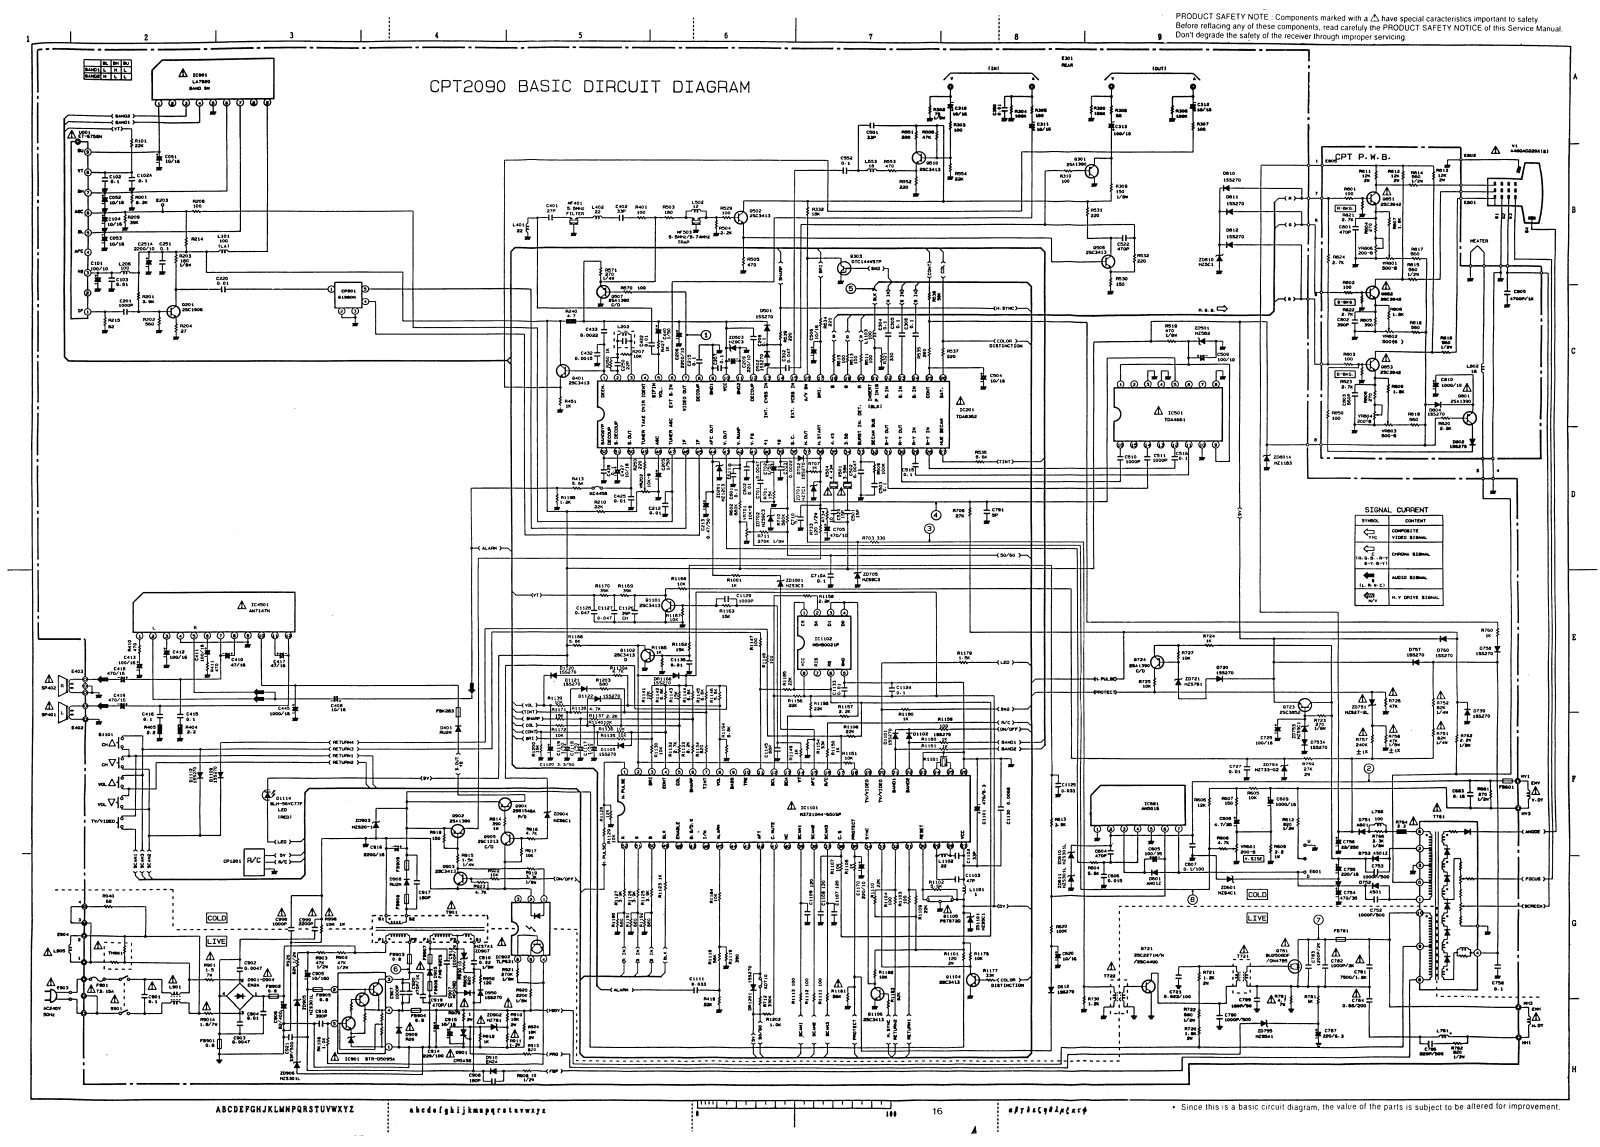 Hitachi CPT-2090 Cirquit Diagram